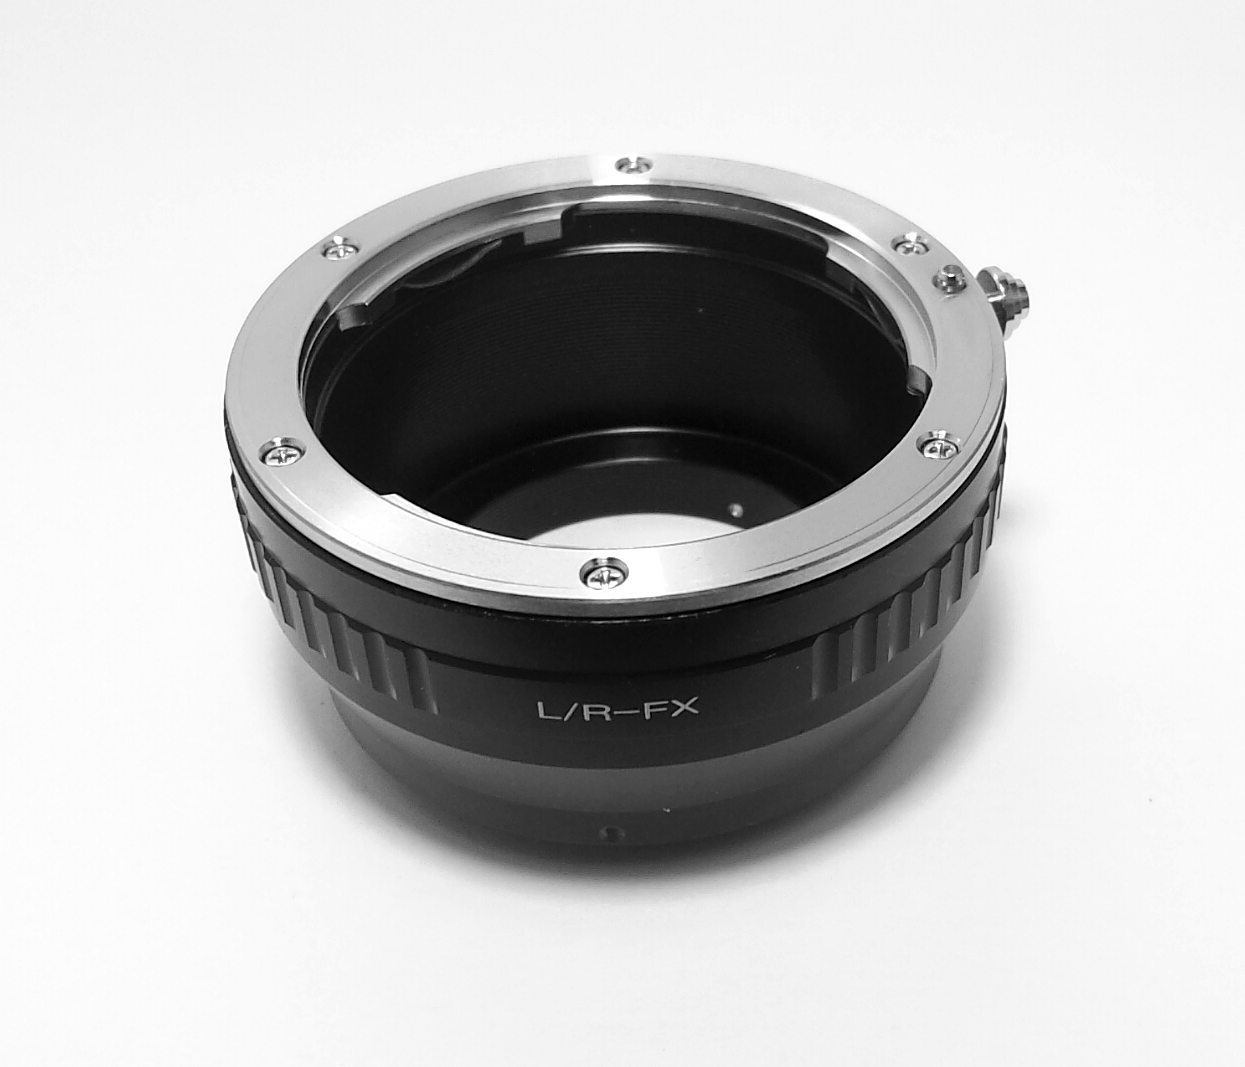 Leica R lens To Fujifilm FX Body